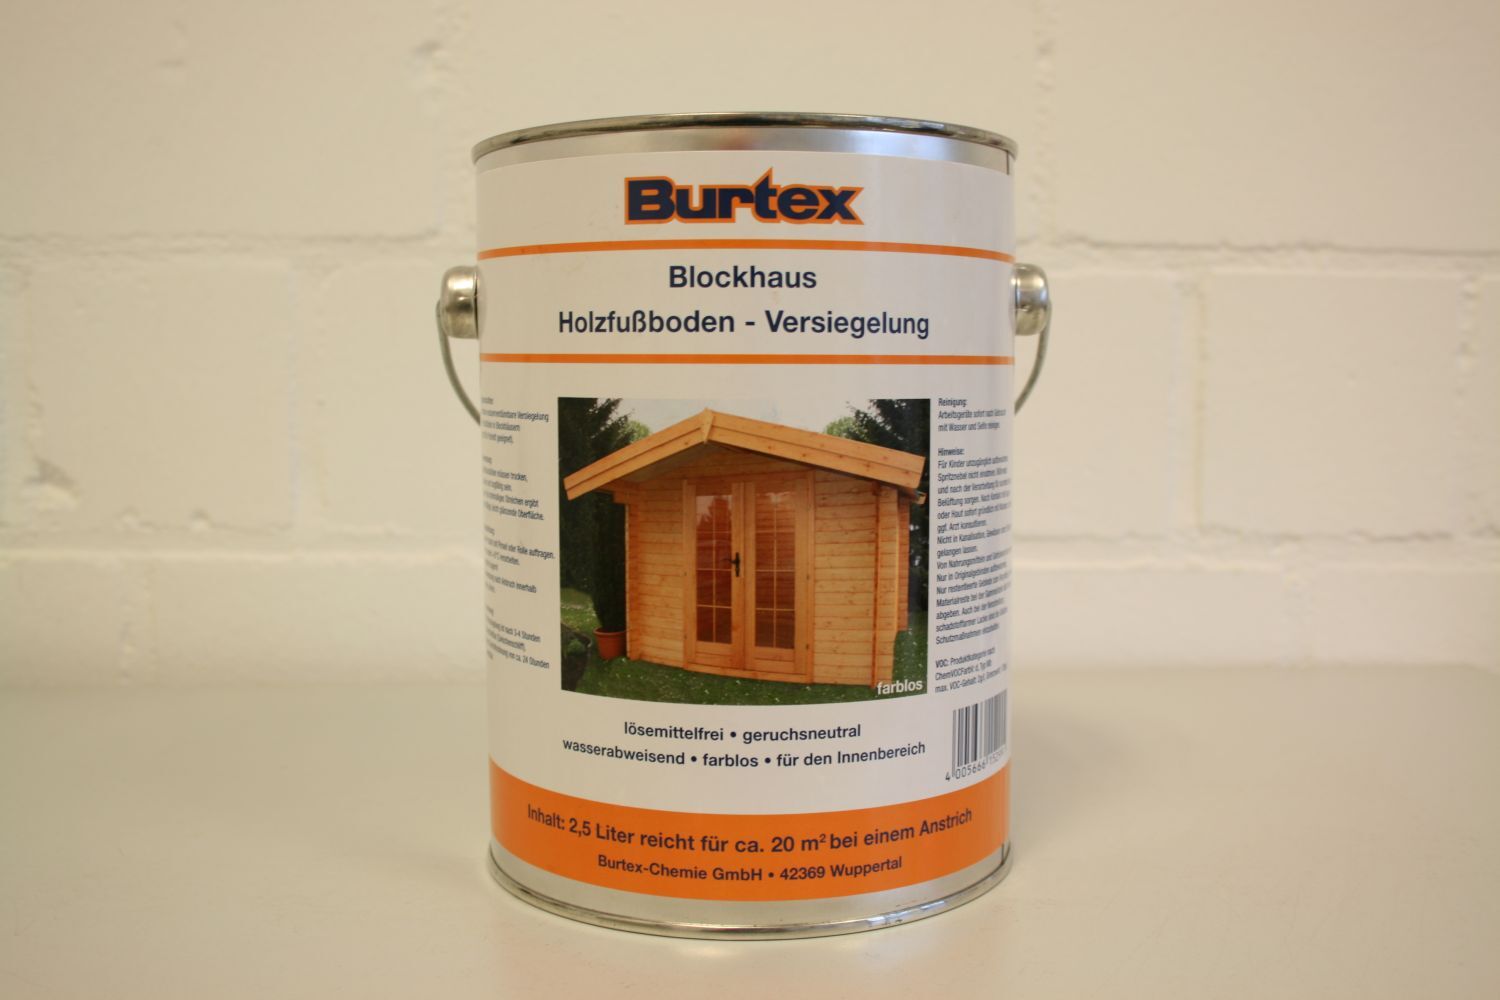 Burtex Blockhaus Holzfußboden Versiegelung